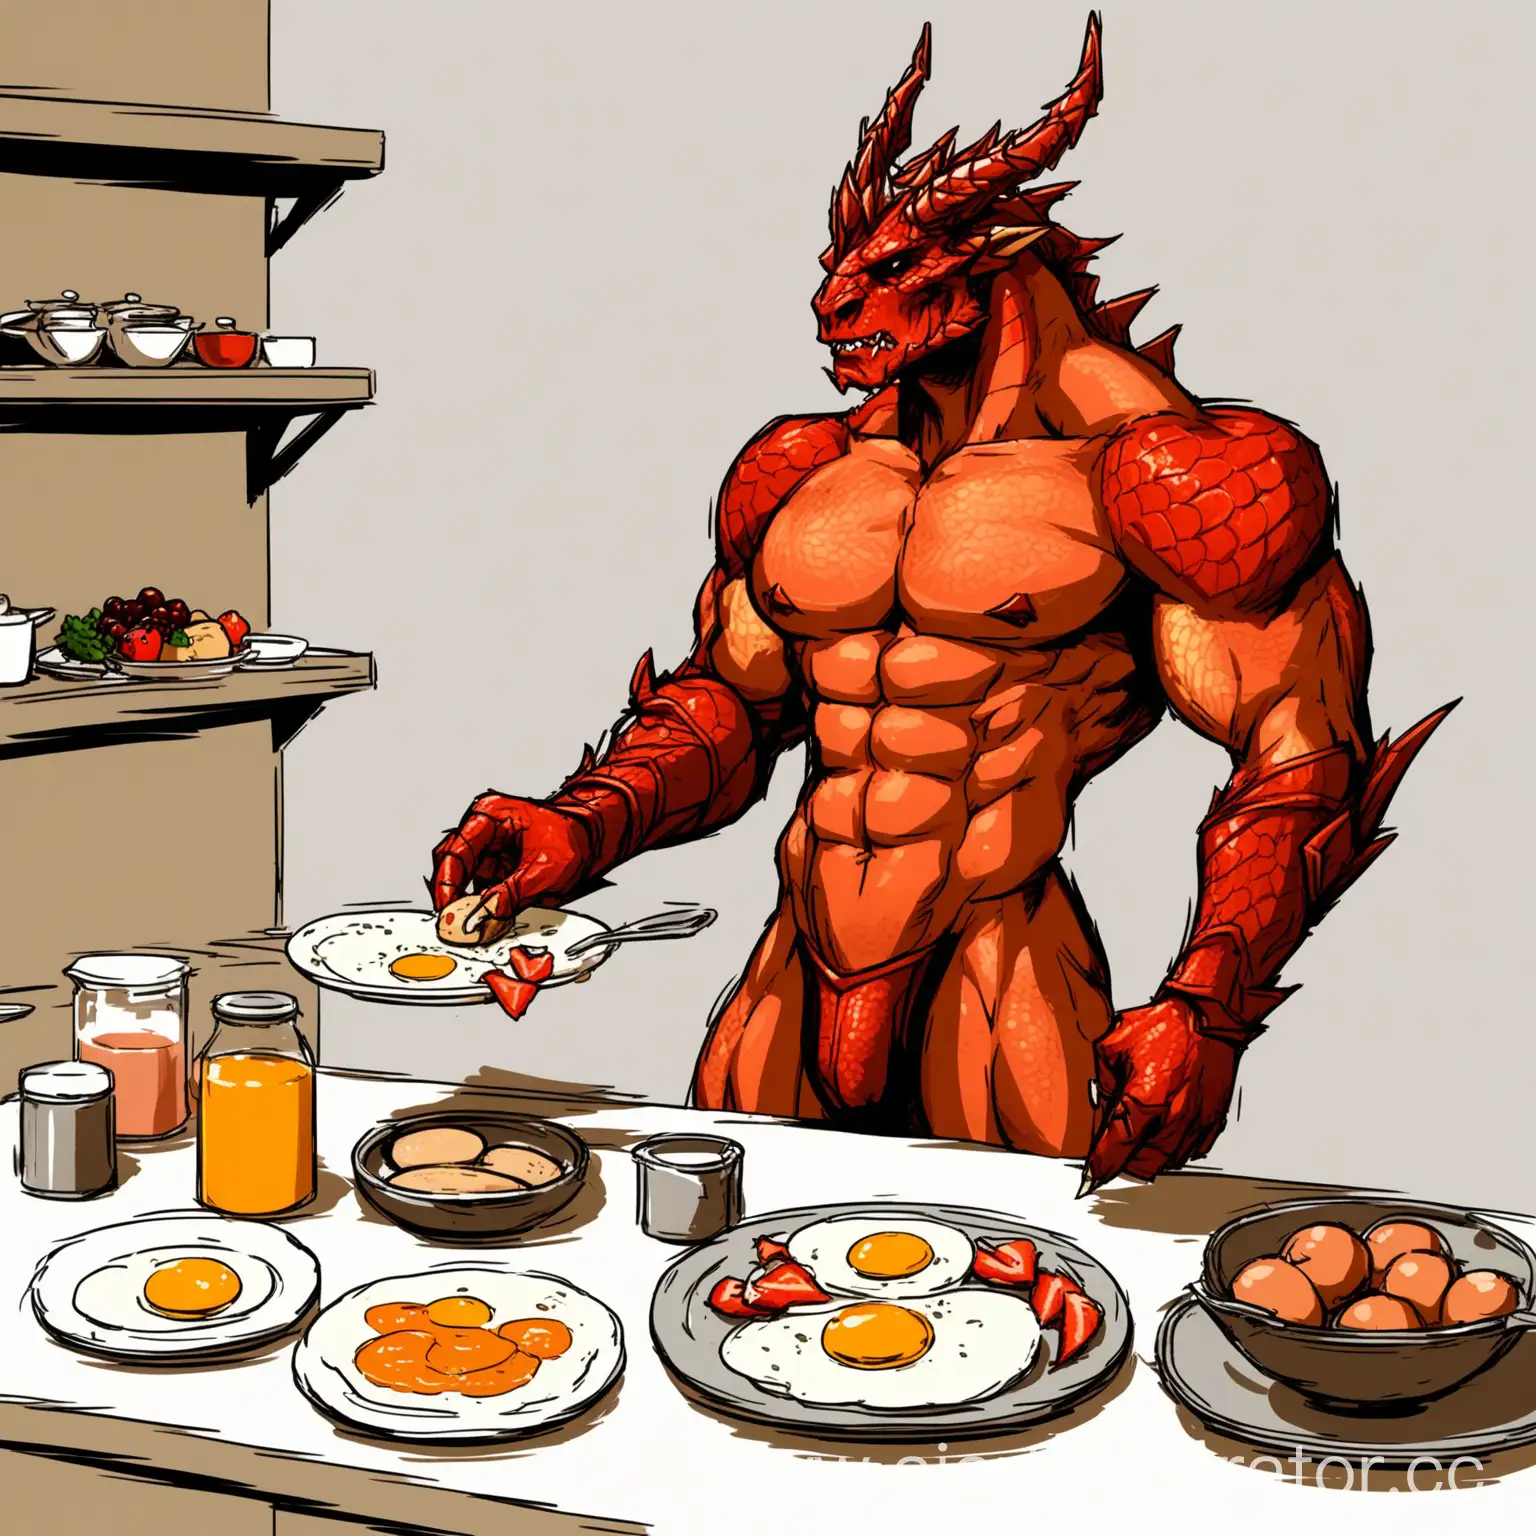 Красный драконорождённый мускулистого телосложения готовит завтрак, топлес, без крыльев, упрощённая рисовка